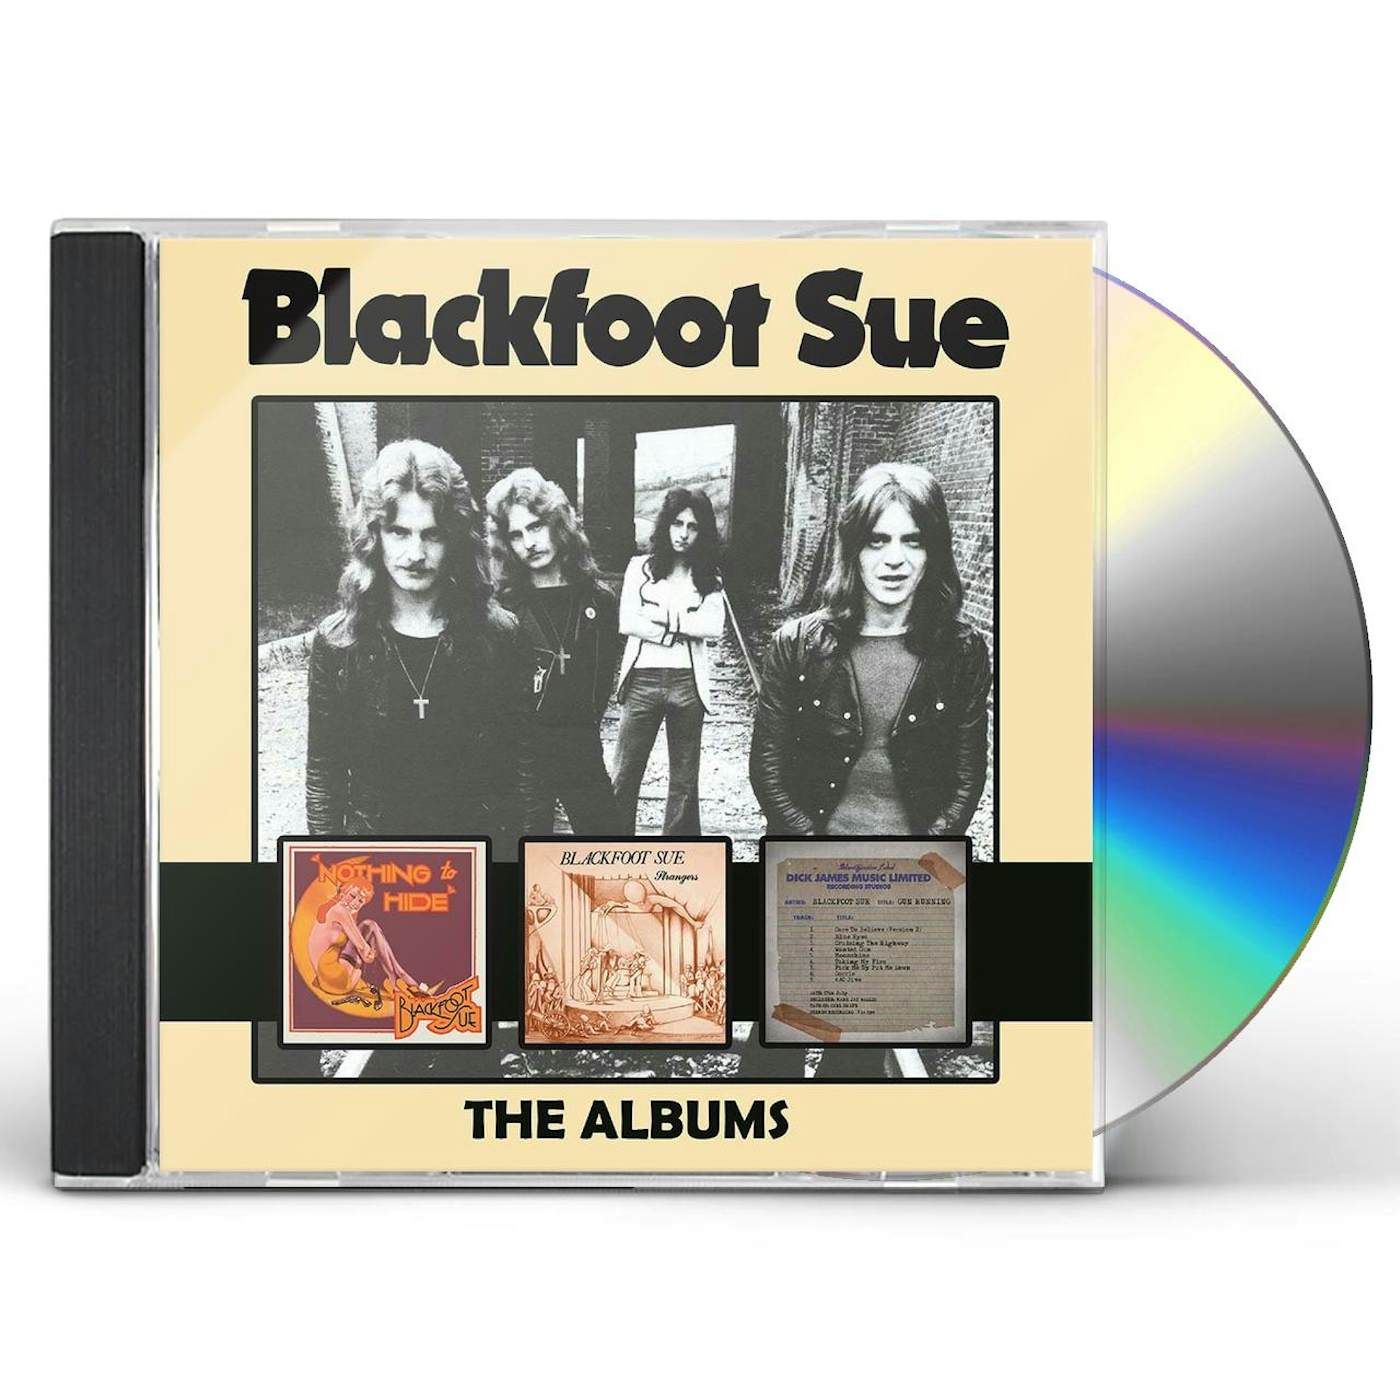 BLACKFOOT SUE: ALBUMS CD